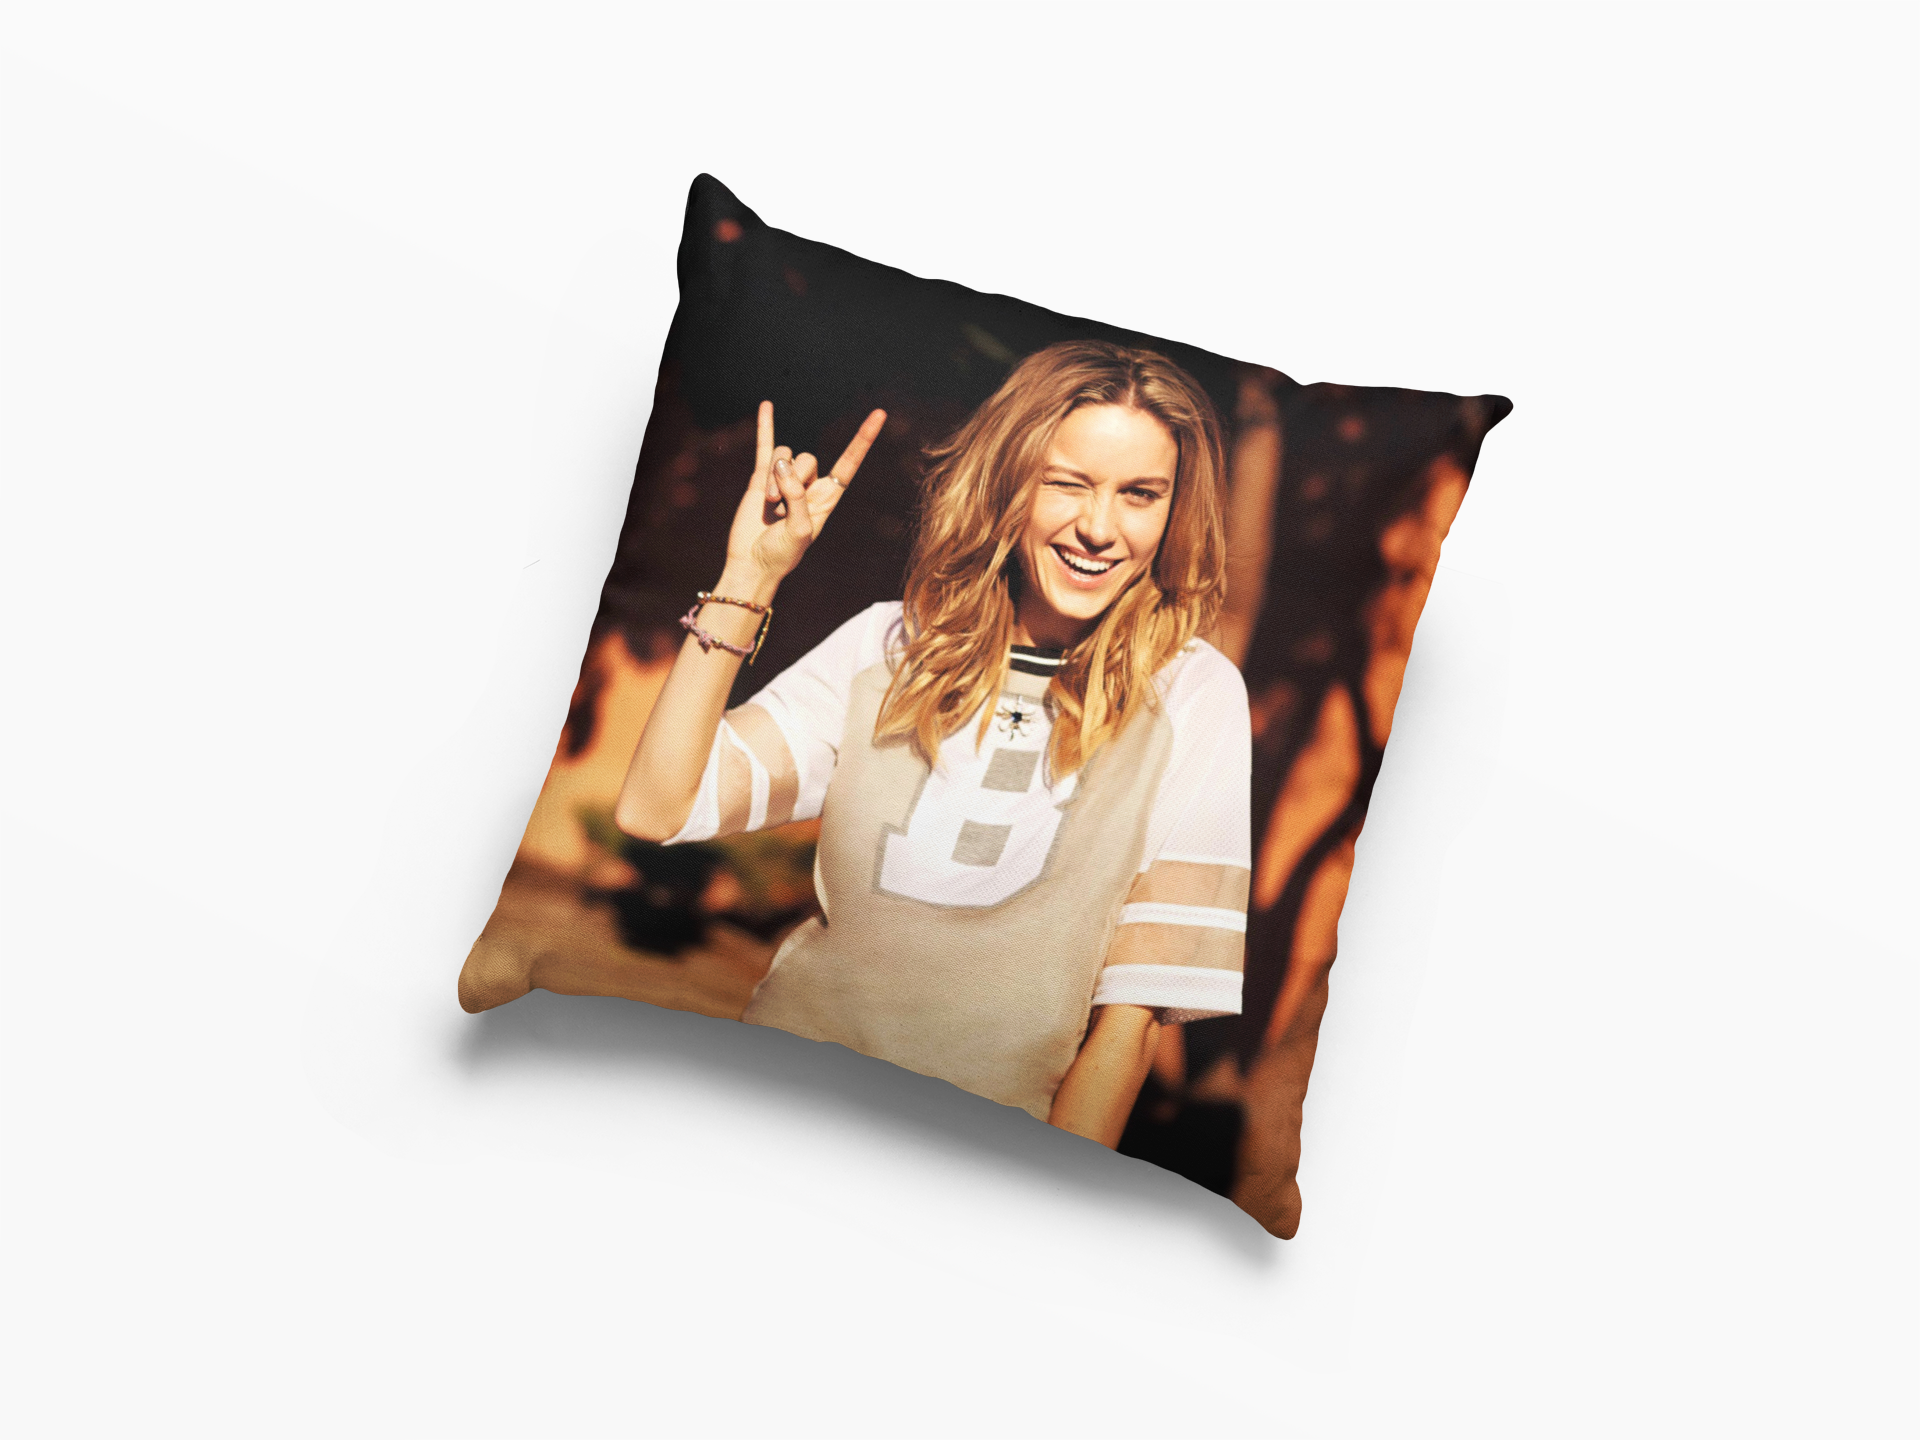 Brie Larson Style Cushion Case / Pillow Case